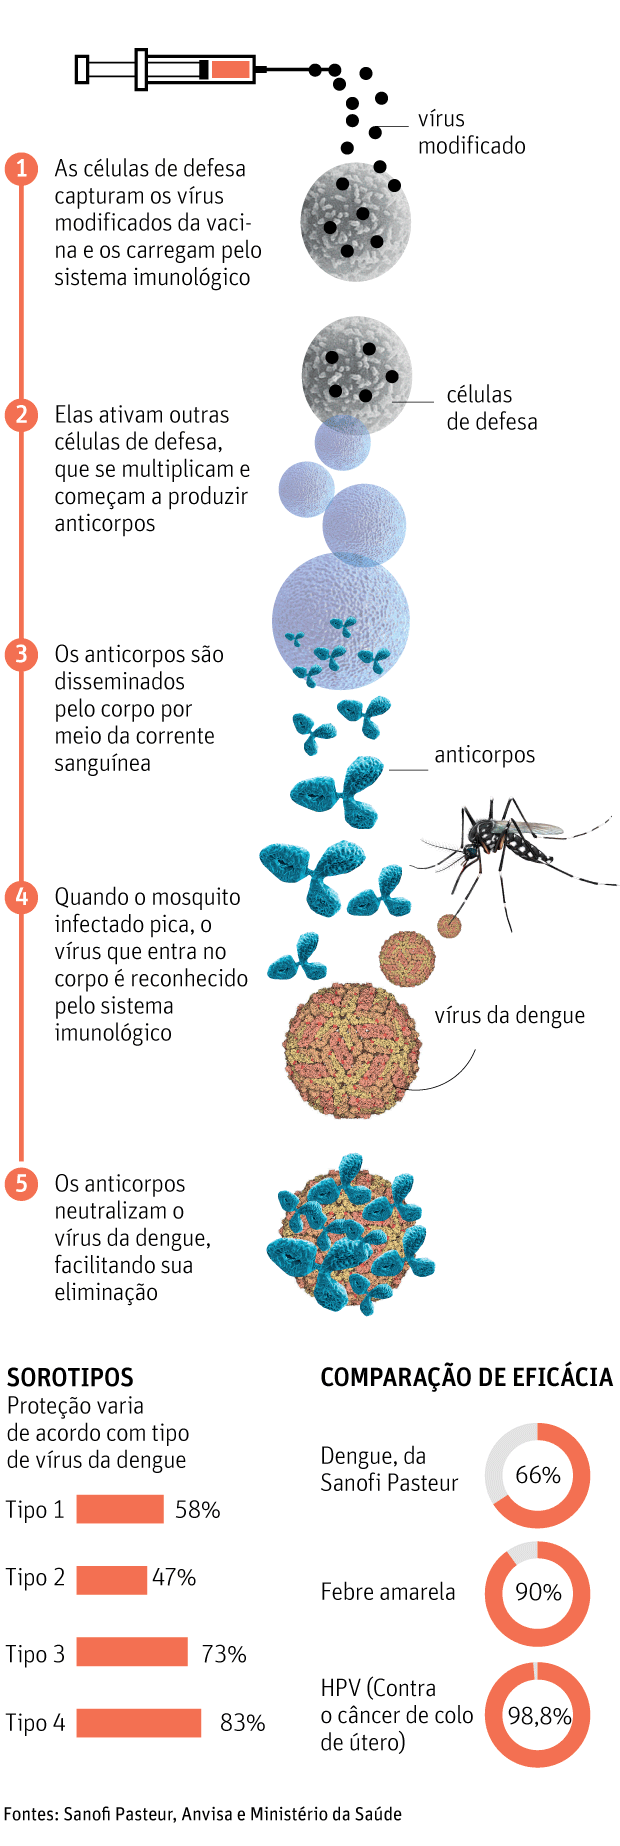 VACINA DA DENGUEAnvisa deixa de recomendar imunização a quem nunca teve a doençaCOMO FUNCIONA A IMUNIZAÇÃO